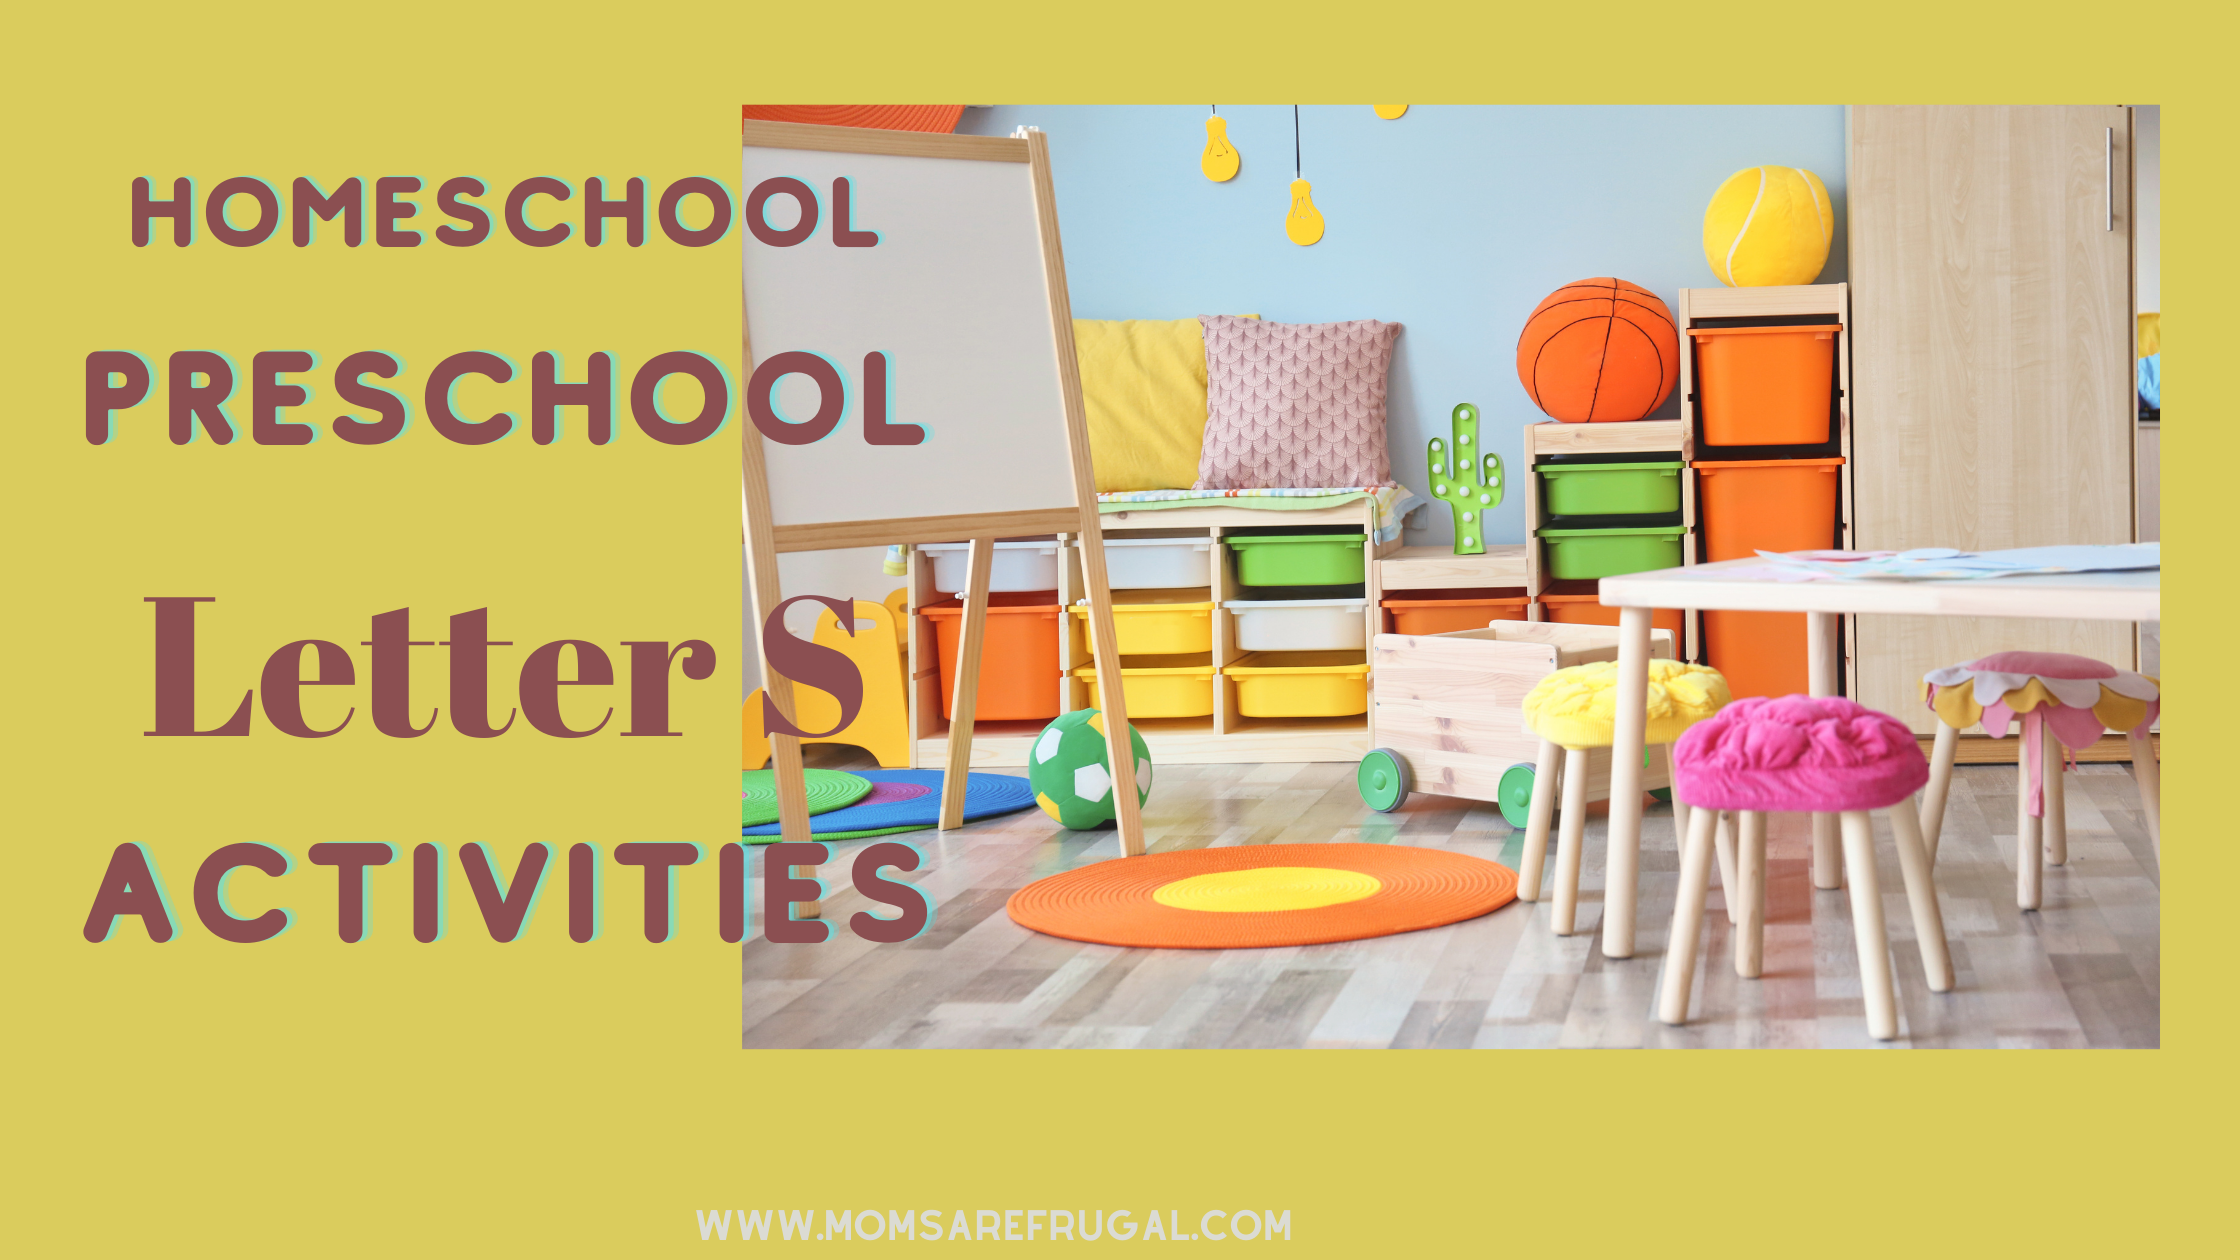 Homeschool Preschool Letter S Activities